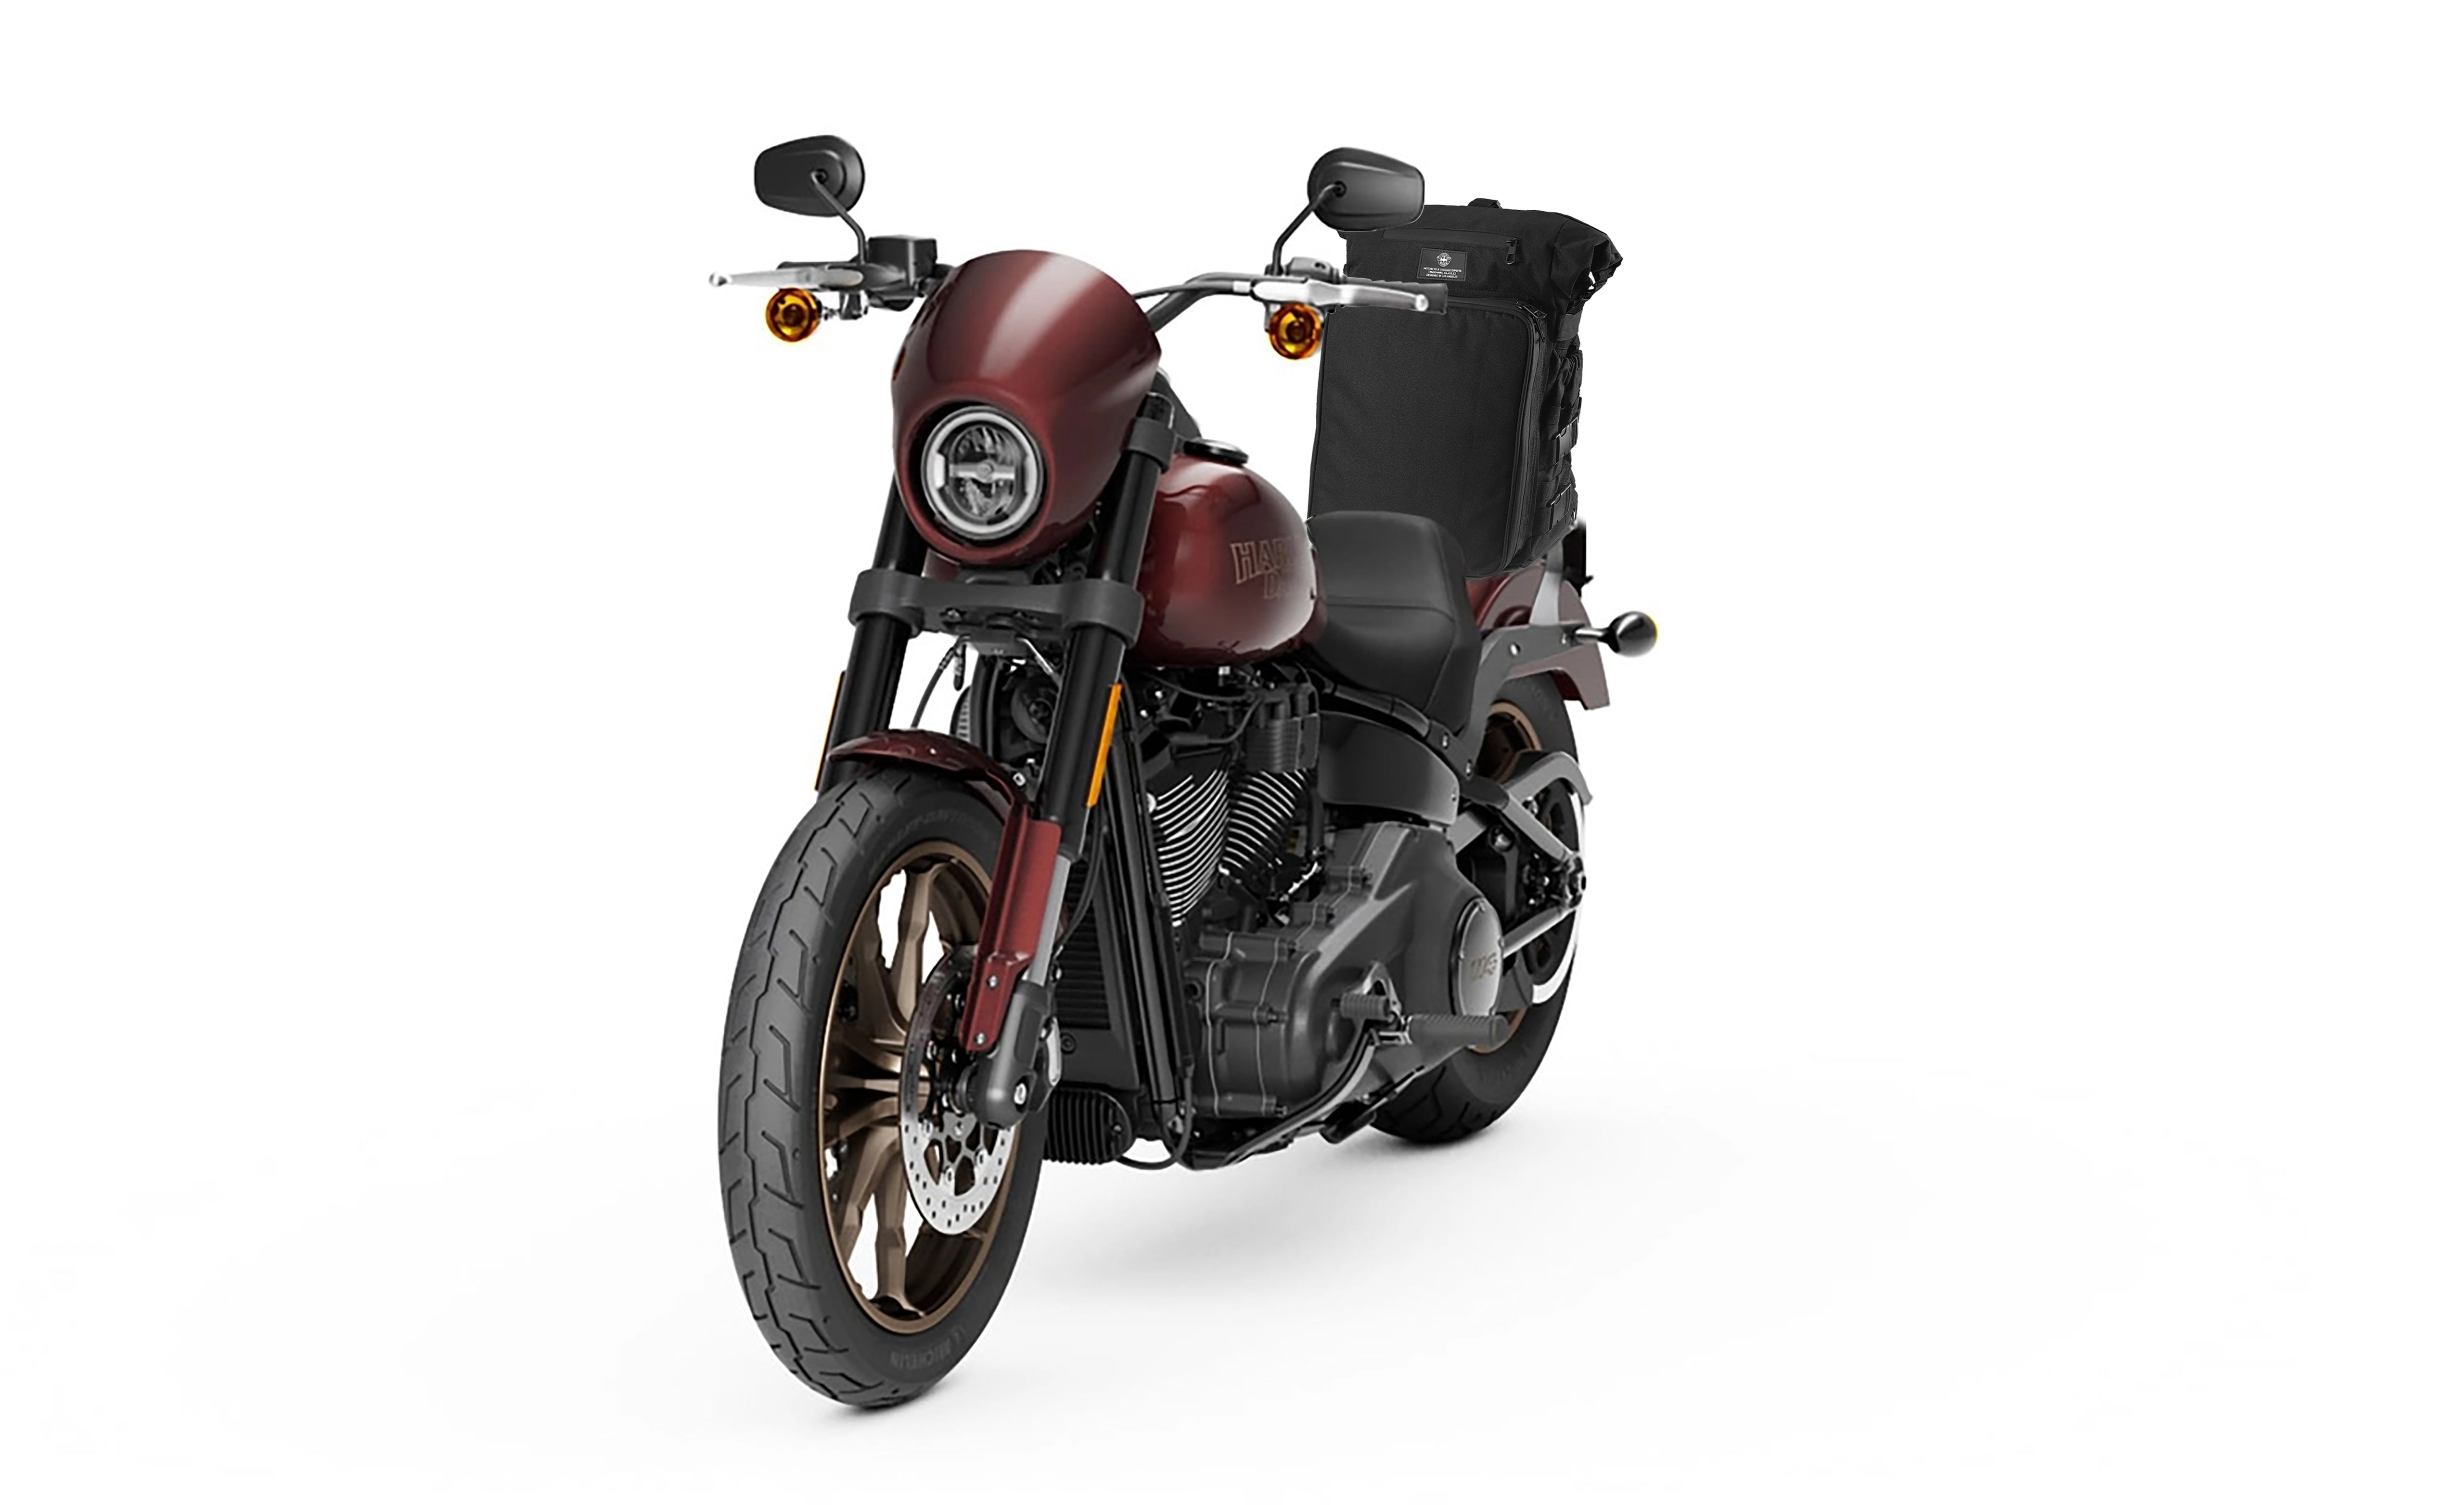 Viking Renegade XL Indian Motorcycle Sissy Bar Bag Bag on Bike View @expand